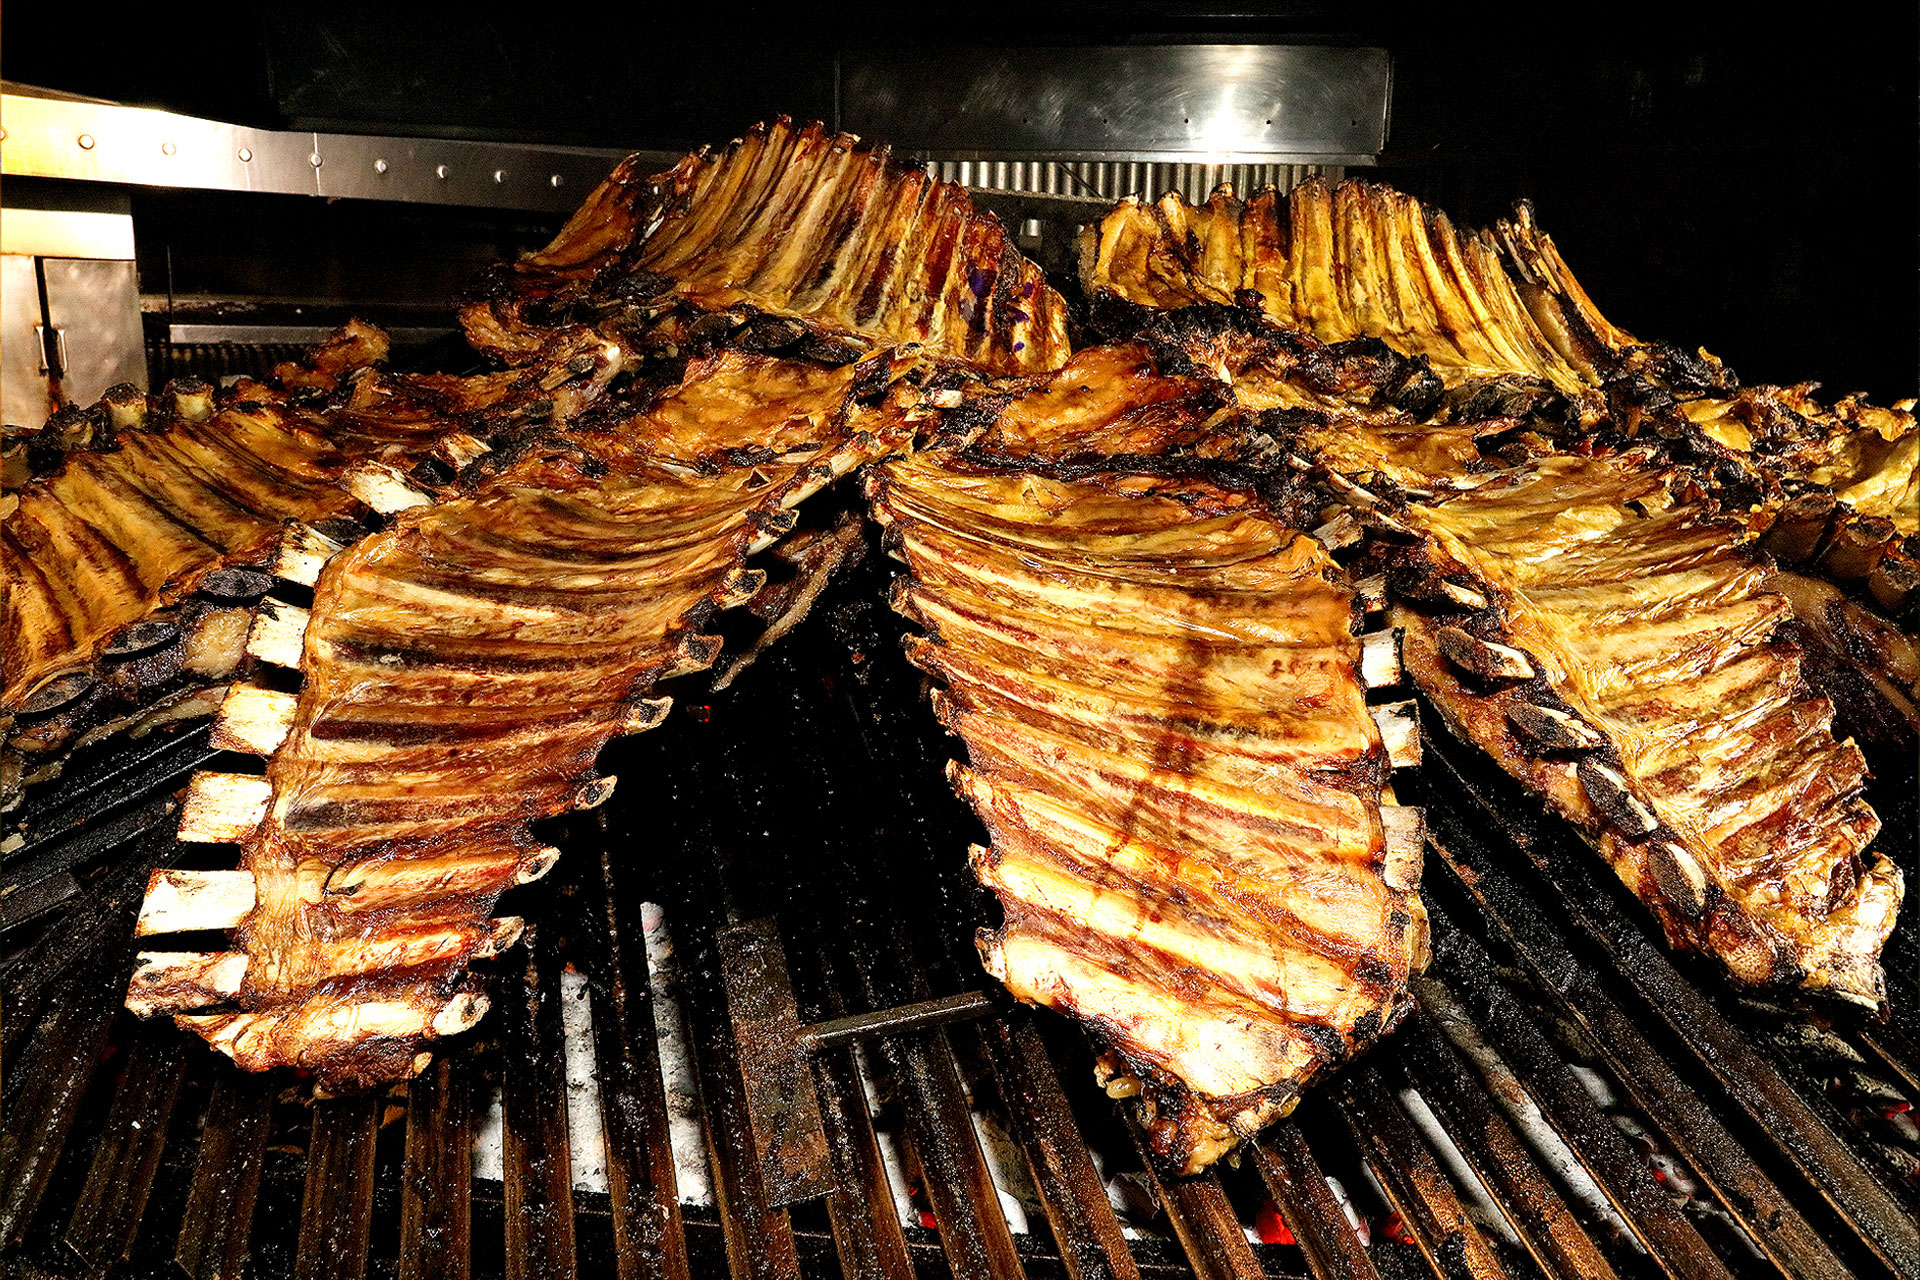 parrilla argentina, parrillada tradicional con variedad de carnes